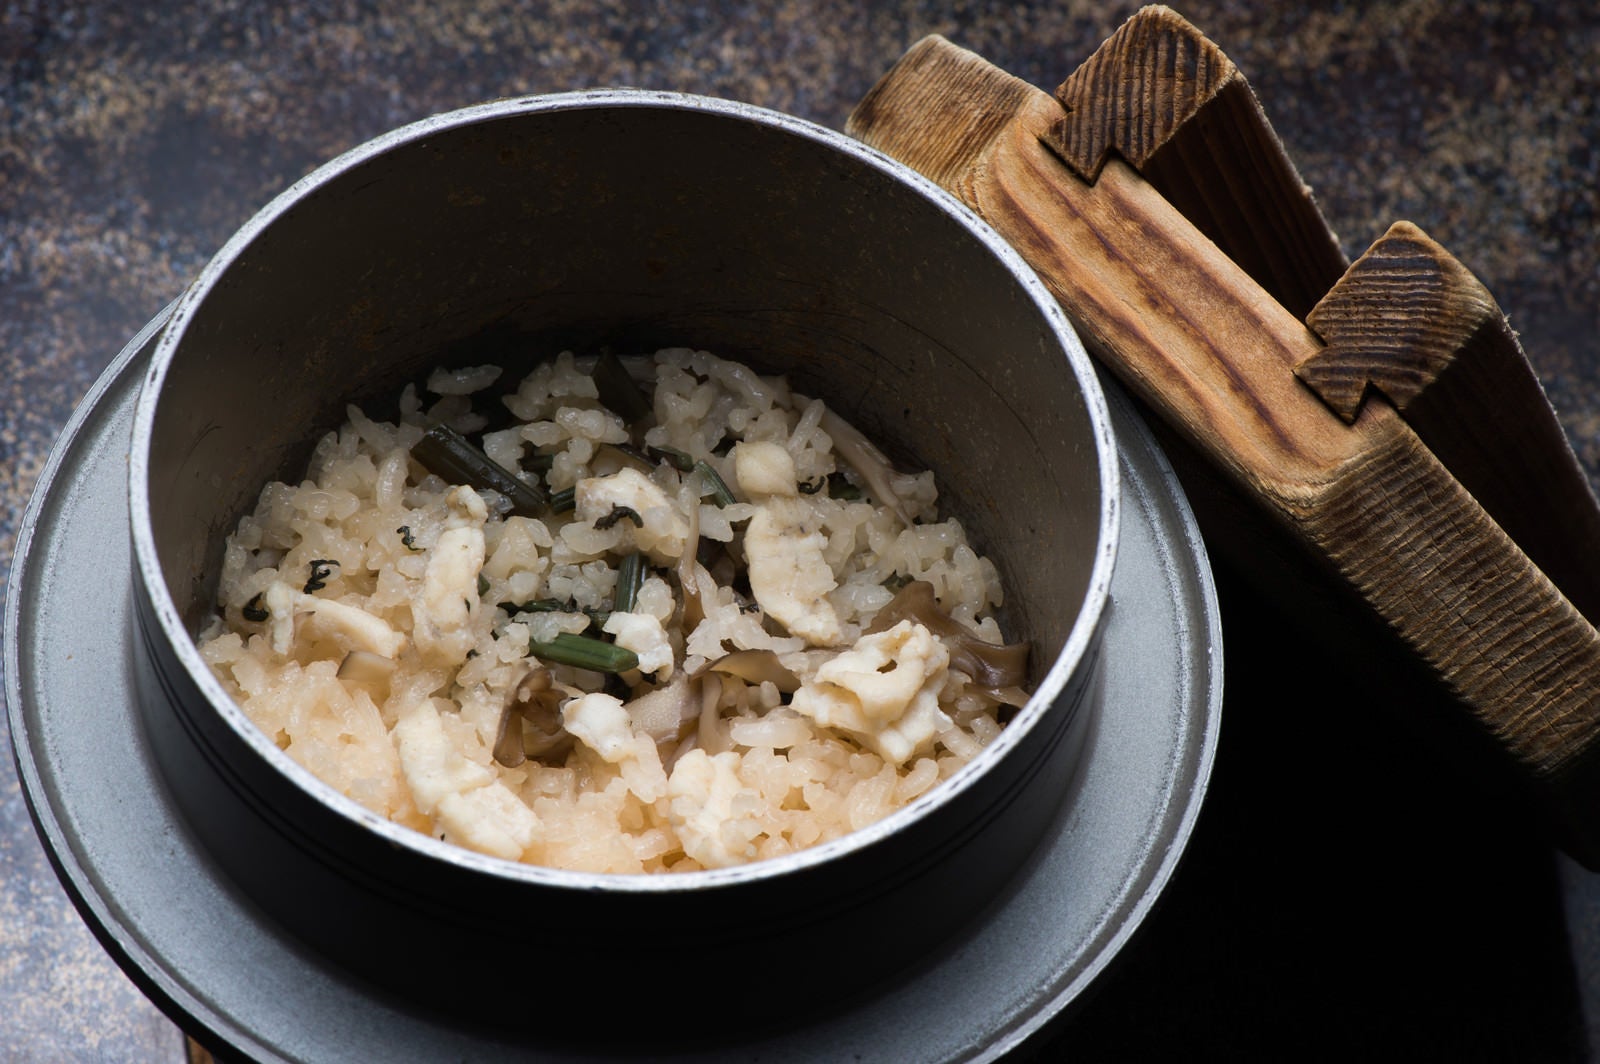 「上品な出汁と飛騨ふぐの淡白な甘みが絶妙な栄太郎の釜飯」の写真